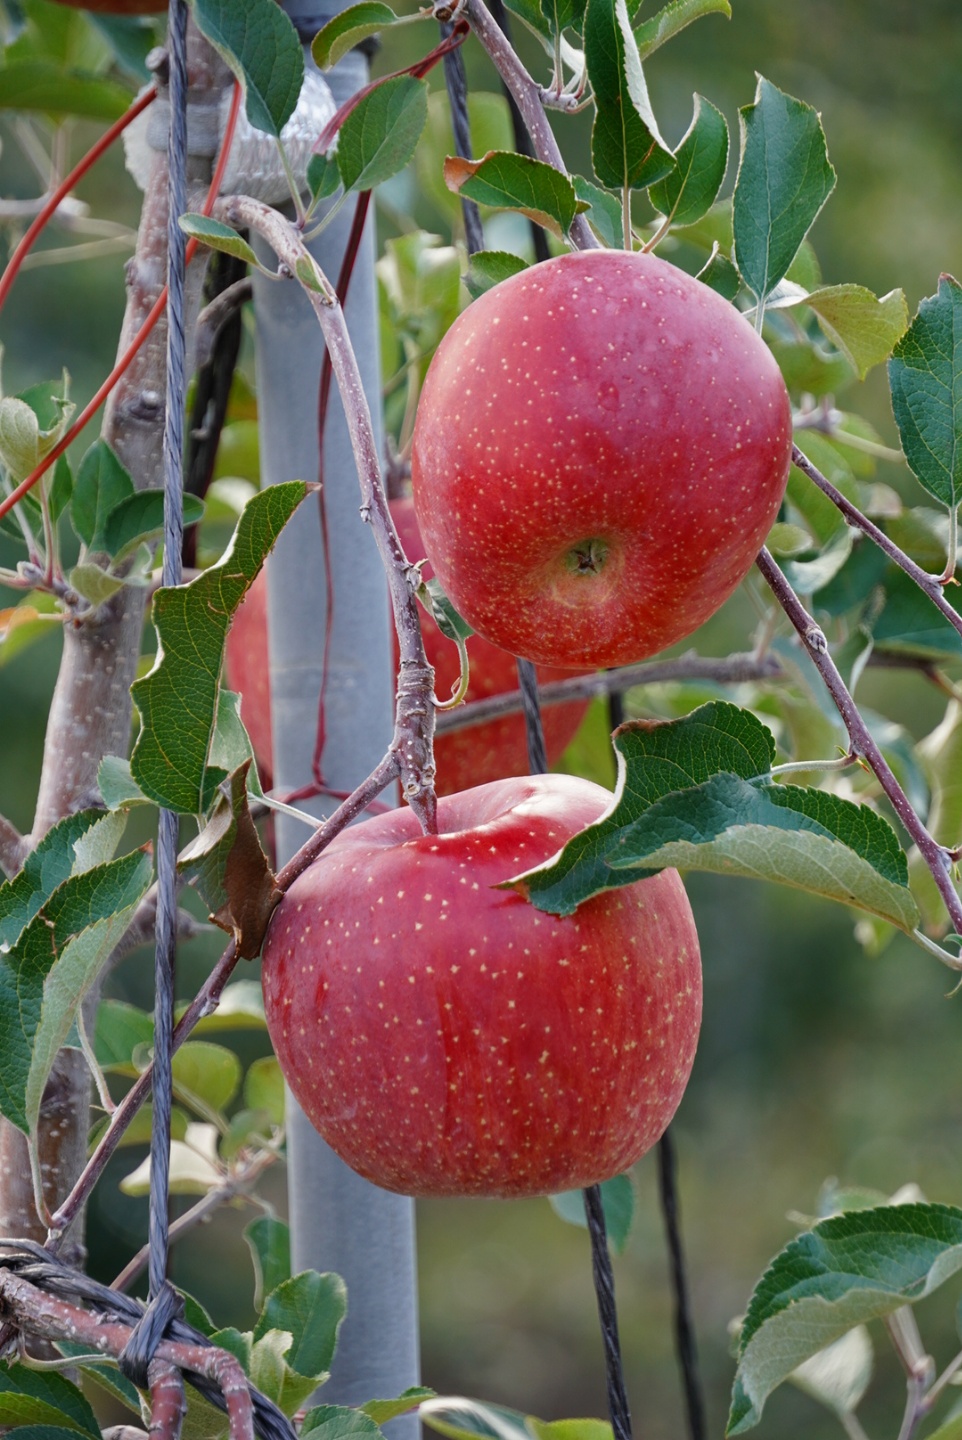 성주 가야산 사과! 맛보장!! 5kg 14-15과 GAP우수농산물